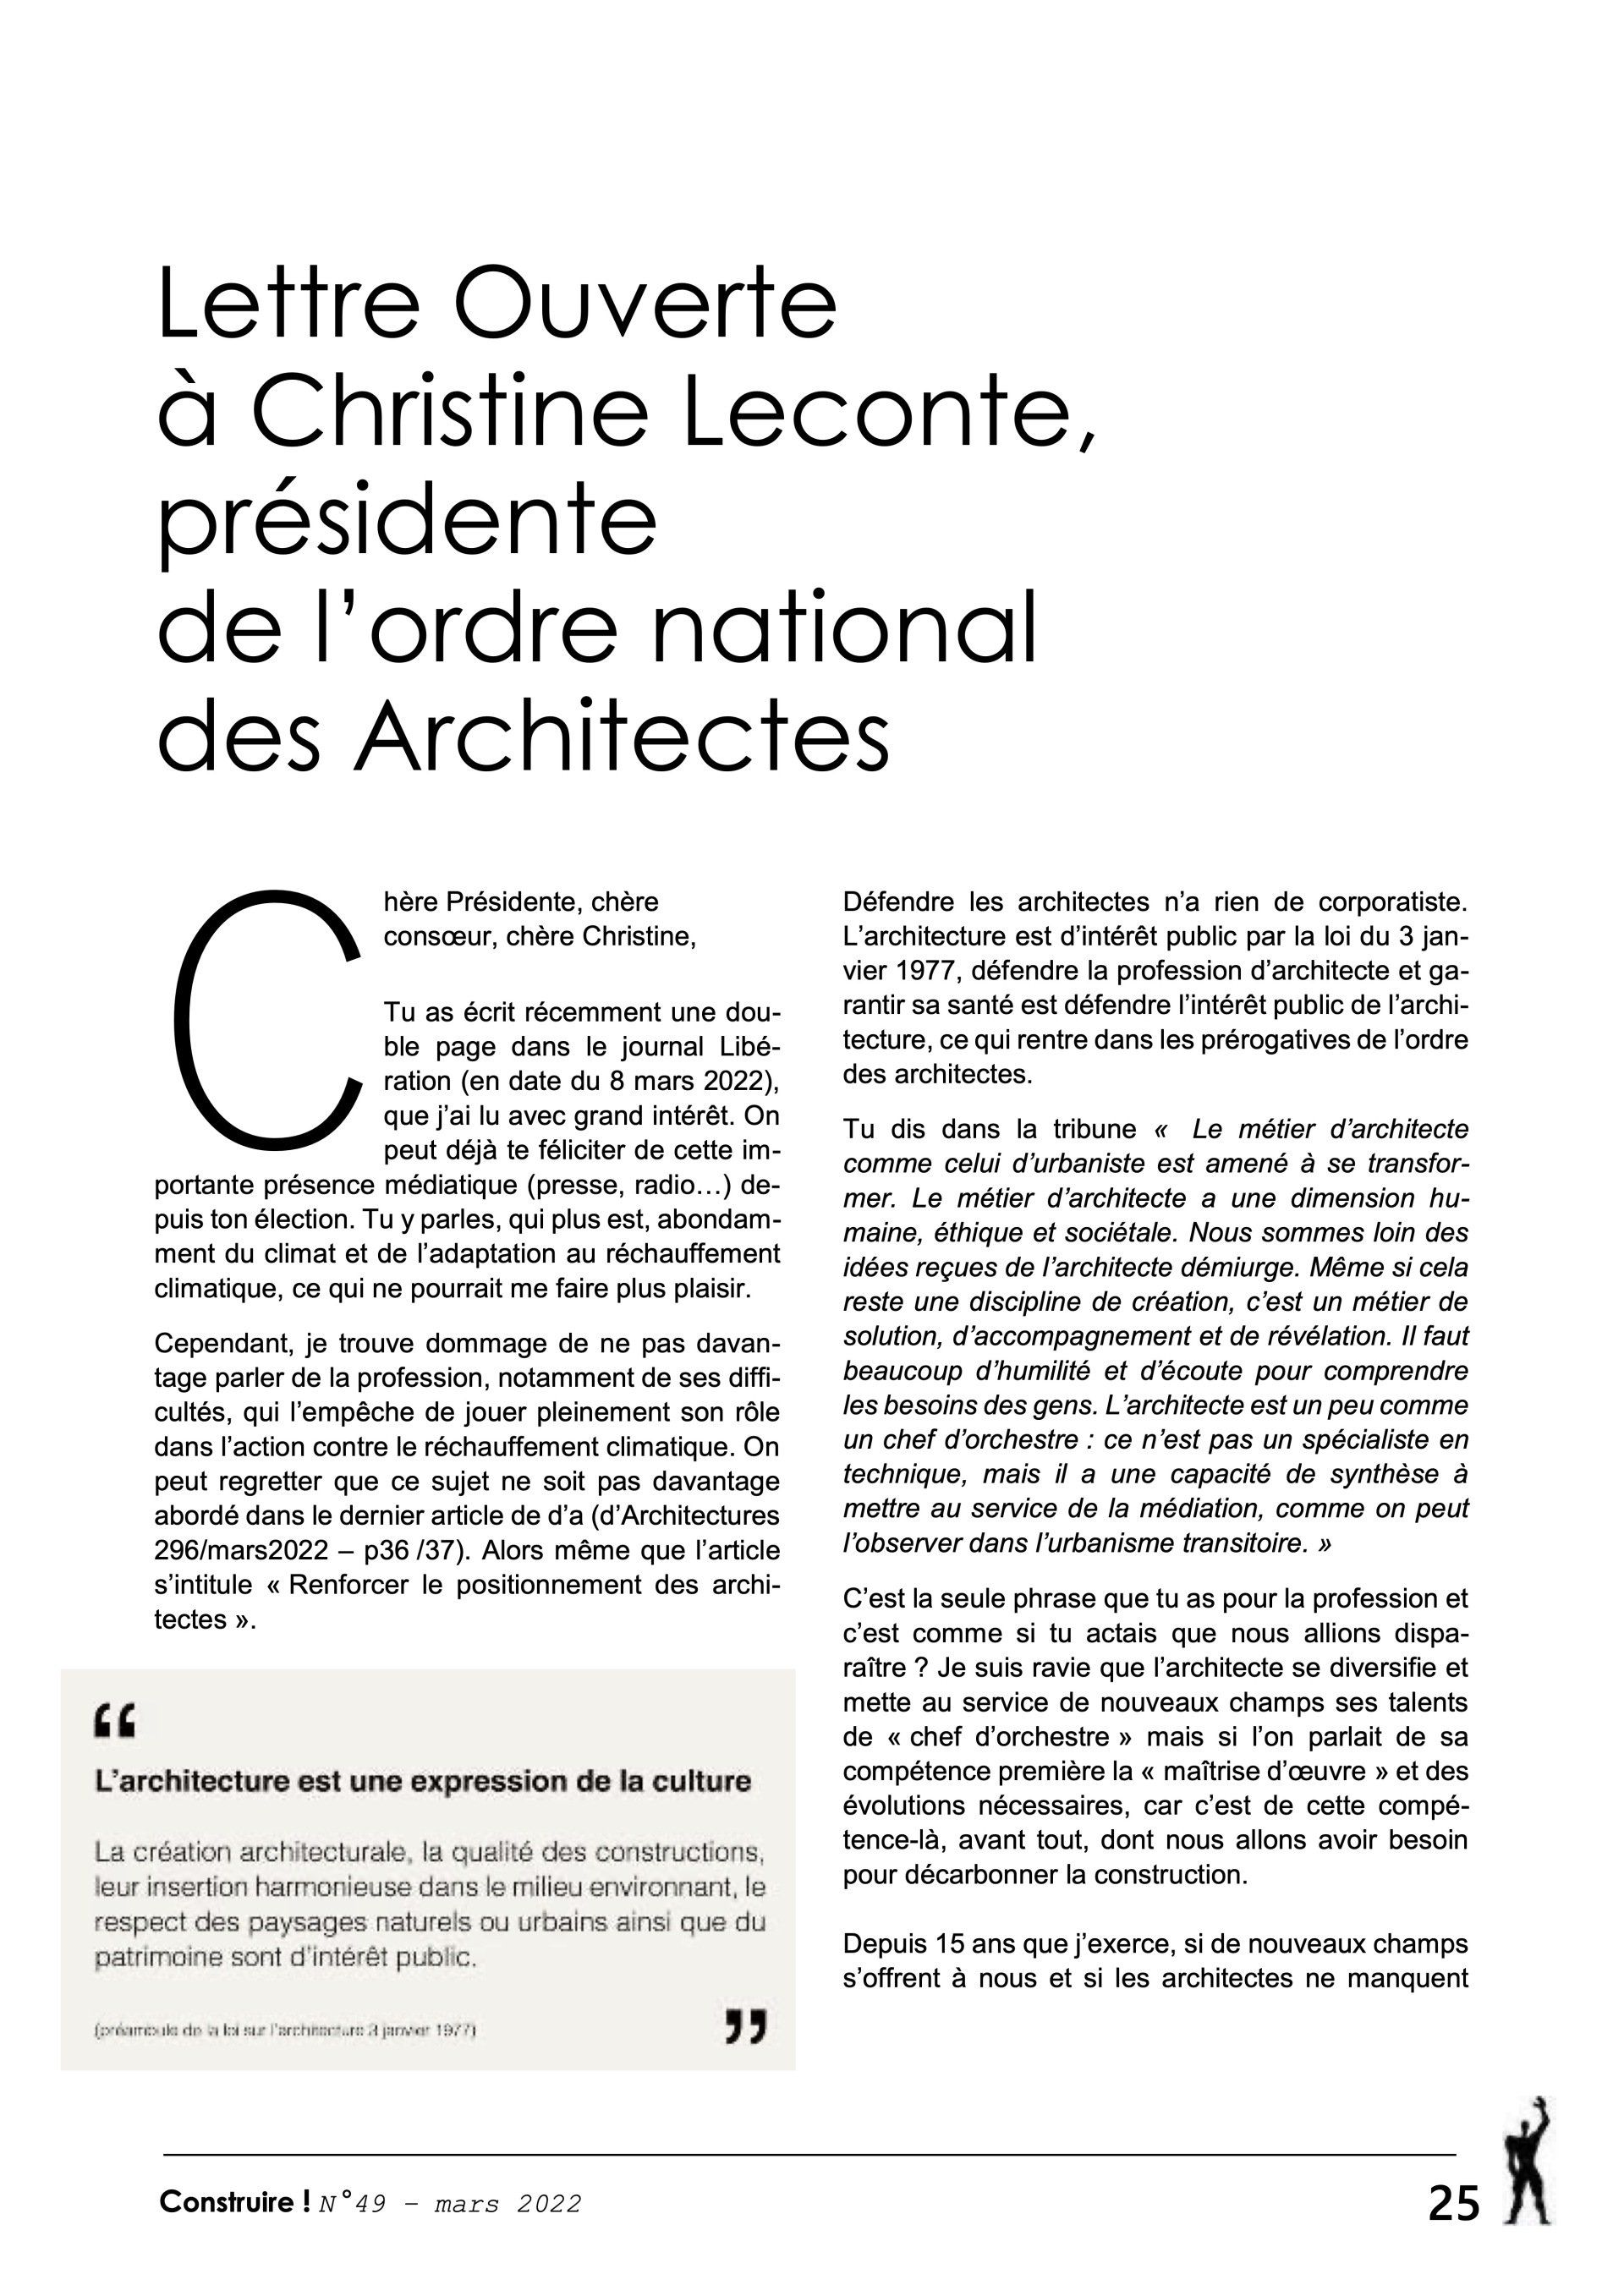 Publication | Lettre Ouverte à Christine Leconte, présidente de l'ordre national des Architectes